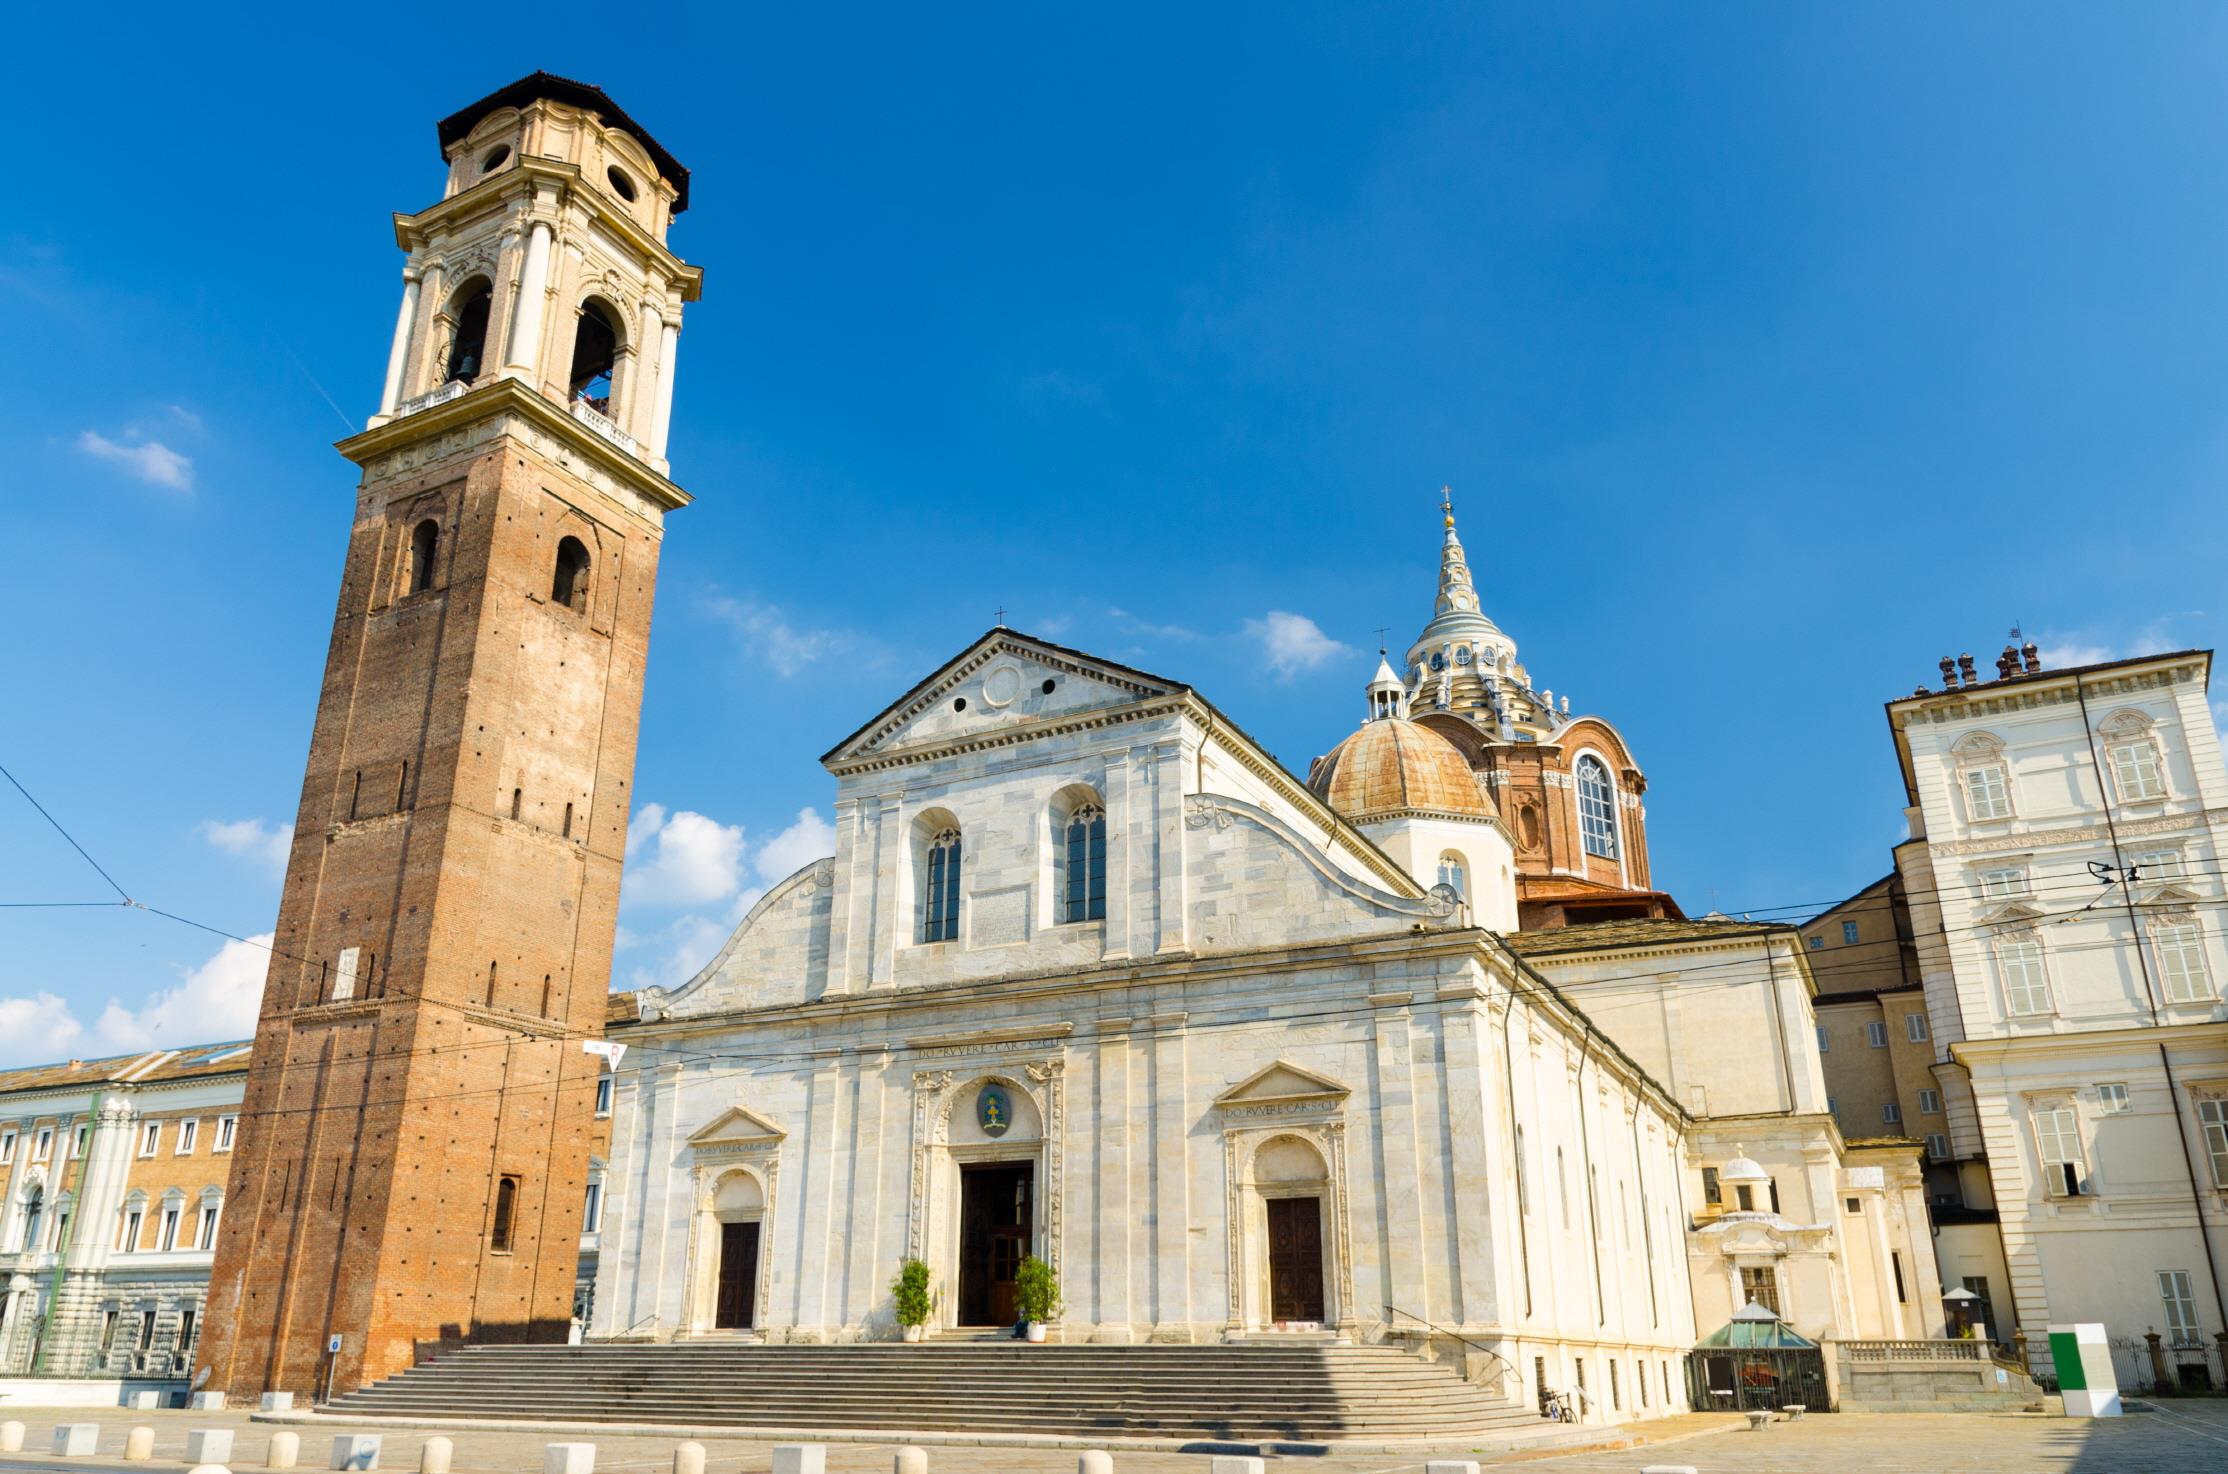 토리노 대성당  Duomo di Torino(Turin Cathedral)